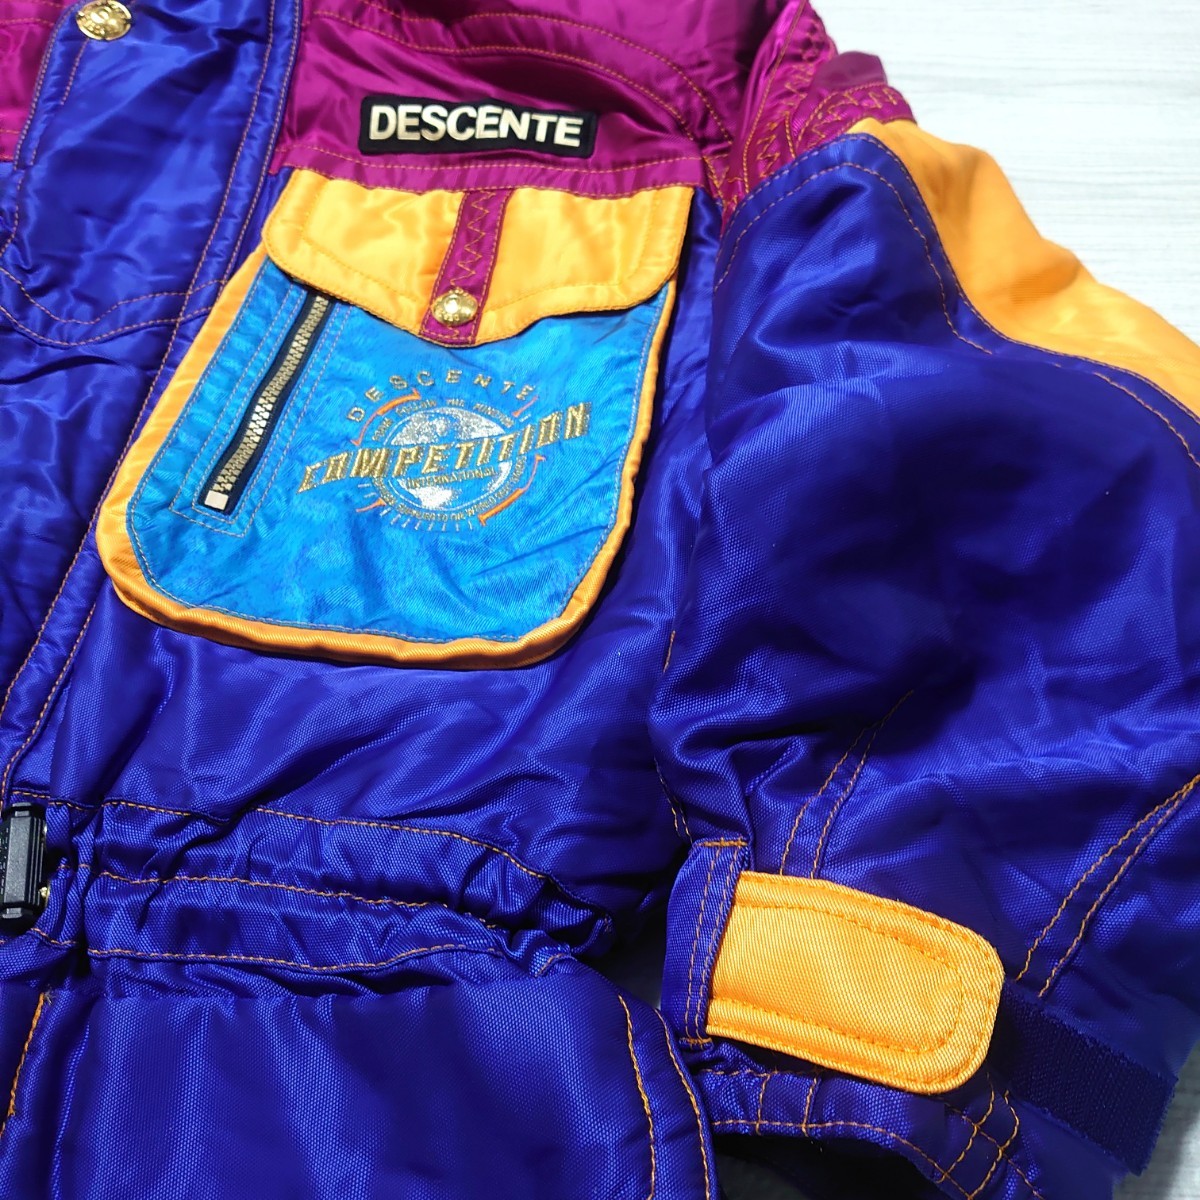 DESCENTE Descente men's ski wear setup jacket pants k Lazy purple embroidery retro that time thing Vintage tp-23x1125